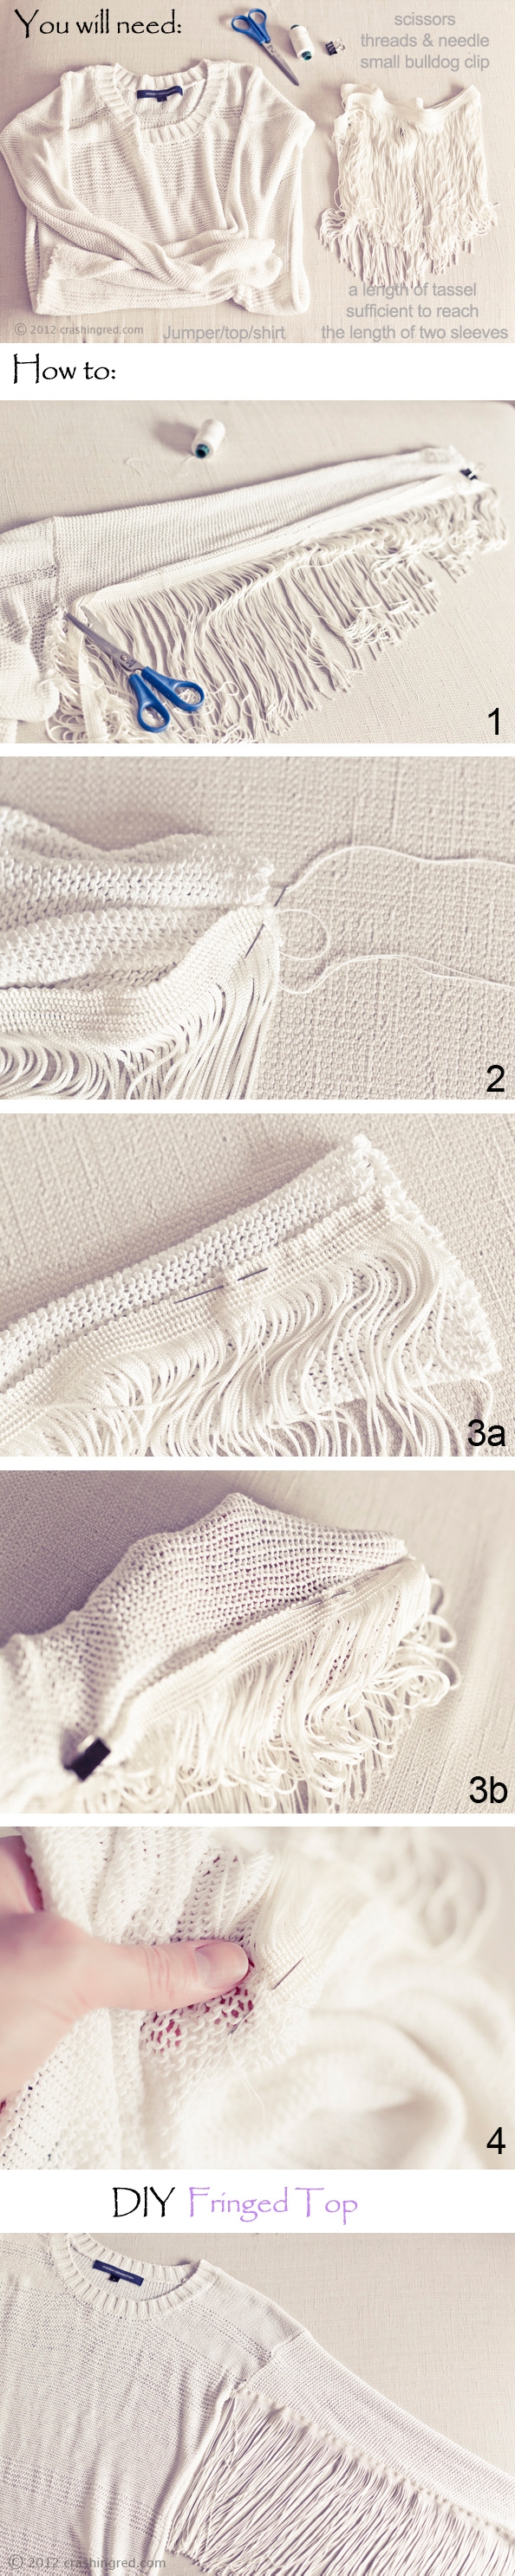 Декор свитера бахромой (DIY)